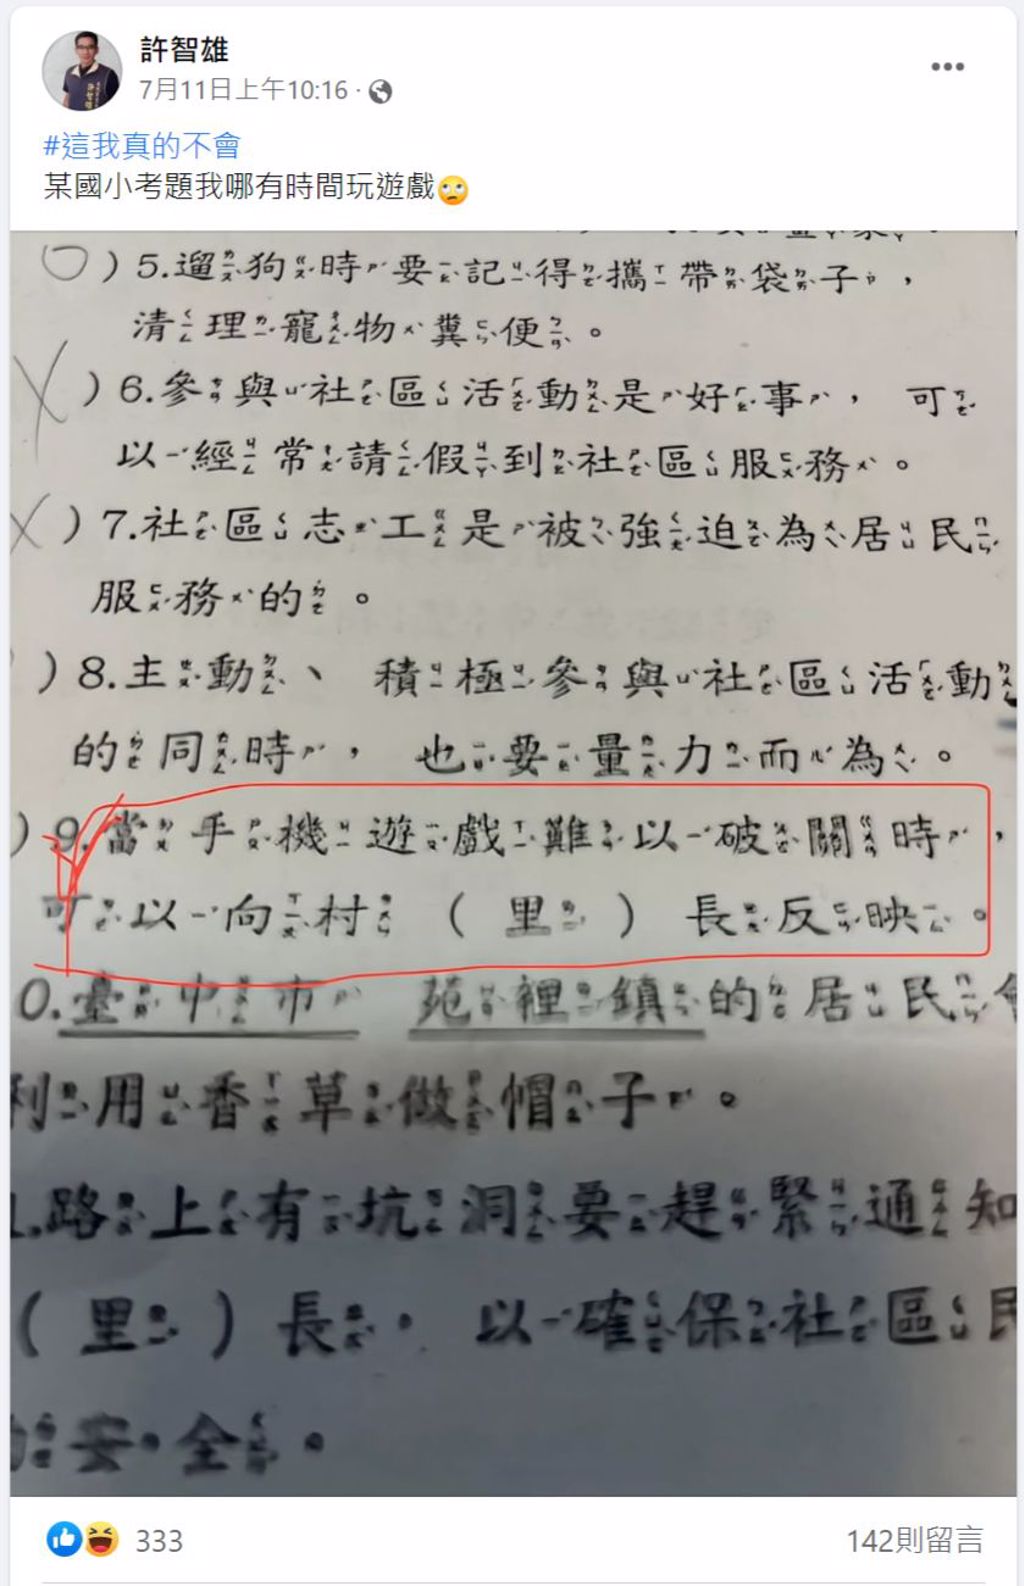 台南市南區大忠里里長許智雄，在臉書分享讓他無奈又好笑的國小是非題題目。(圖/翻攝自「許智雄」臉書)